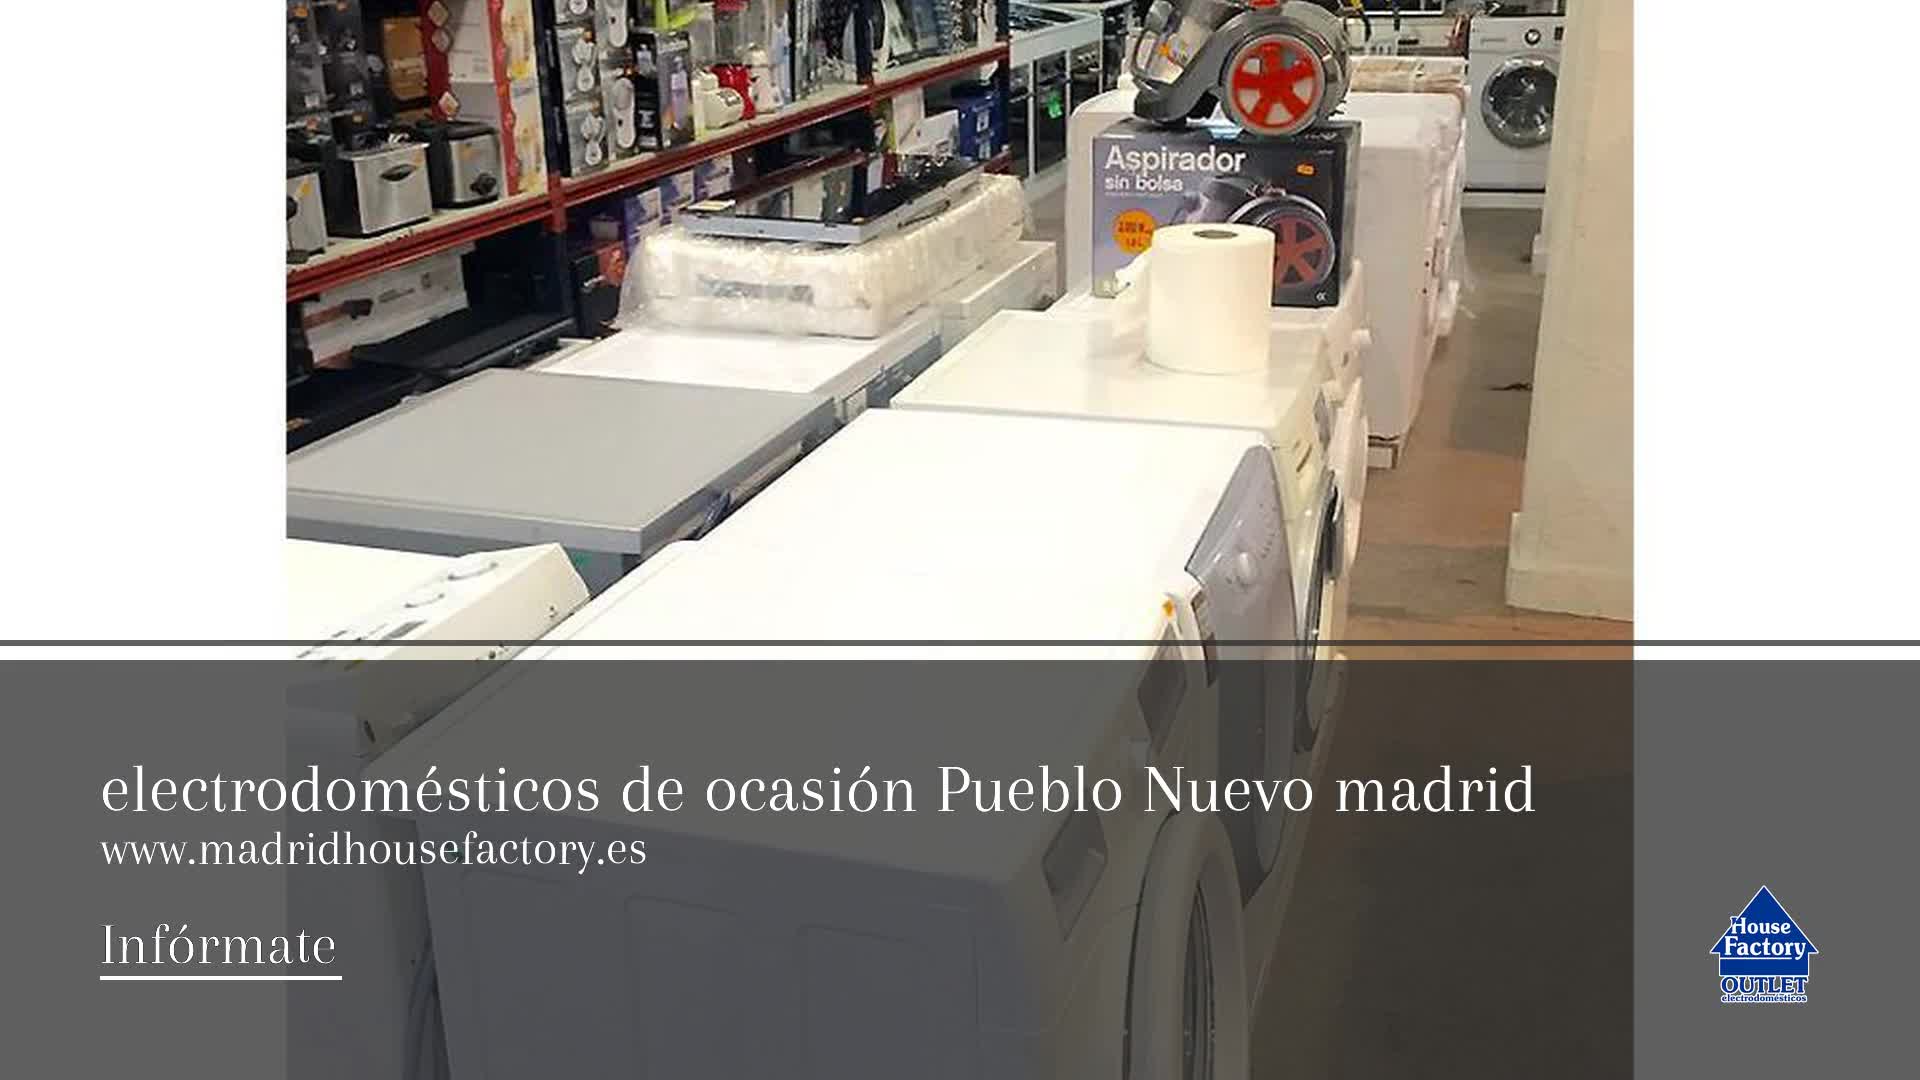 Outlet de electrodomésticos en Pueblo Nuevo  House Factory Madrid Outlet  de Electrodomésticos Pueblo Nuevo